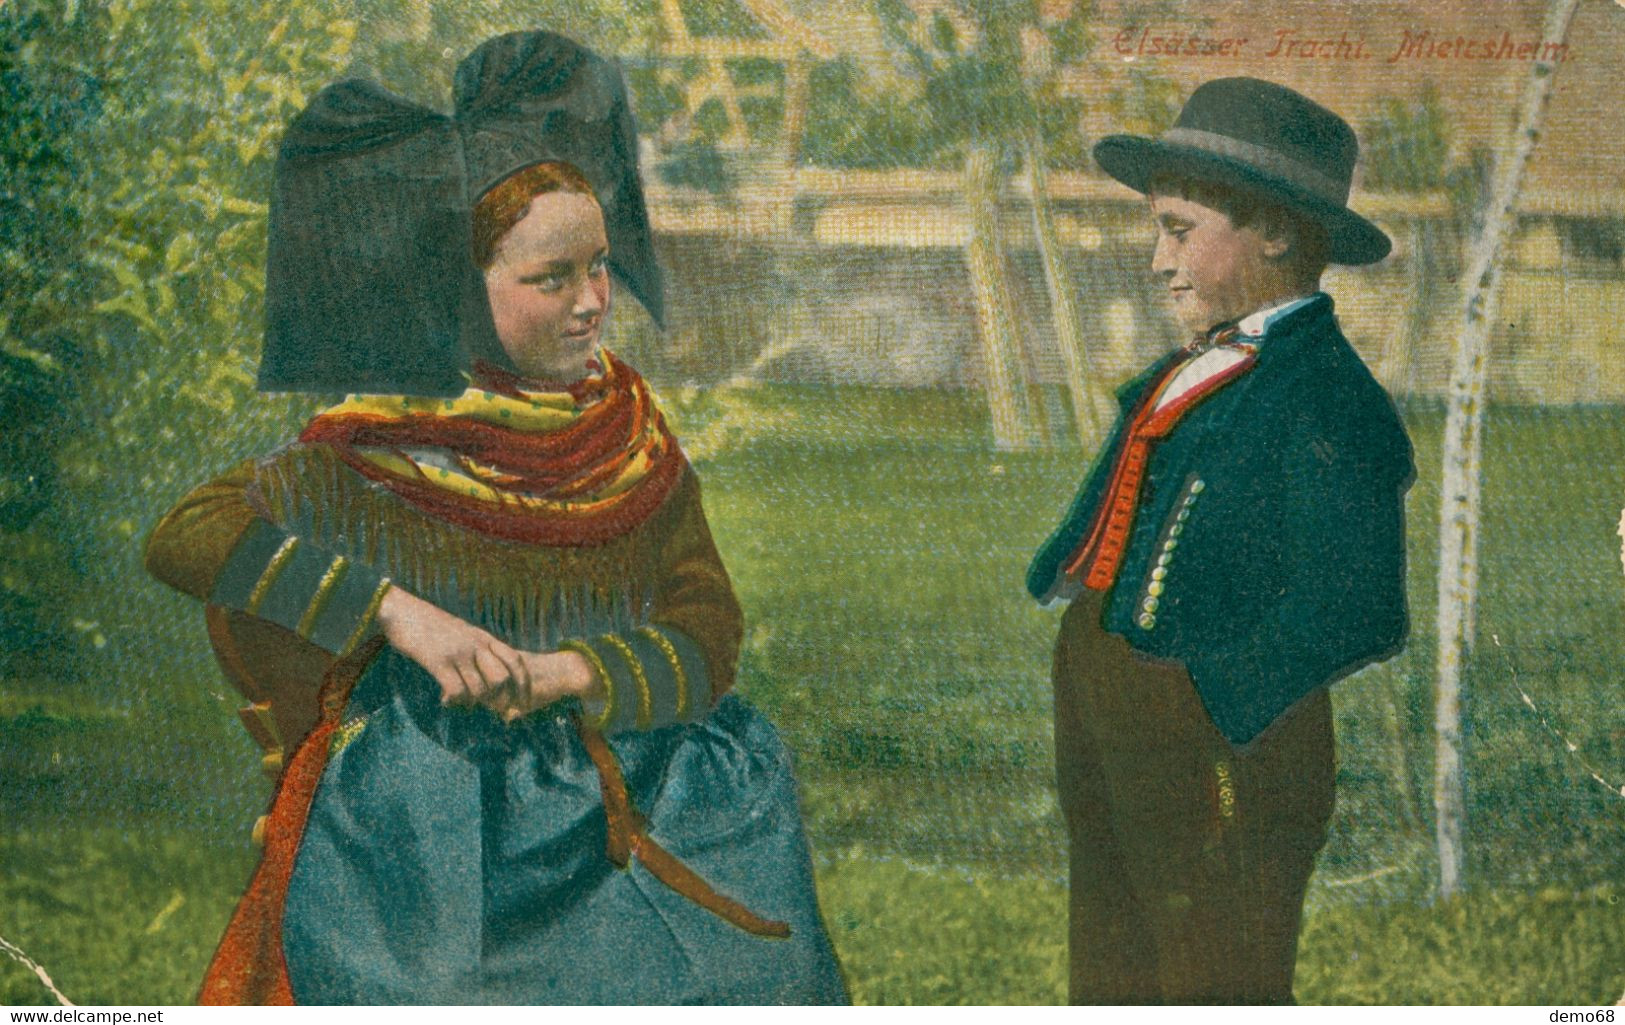 Costumes - Fantaisie Folklore Patriotisme Alsace Alsacienne Alsacien enfant  jeune Costume Nœud jeune fille garçon chapeau